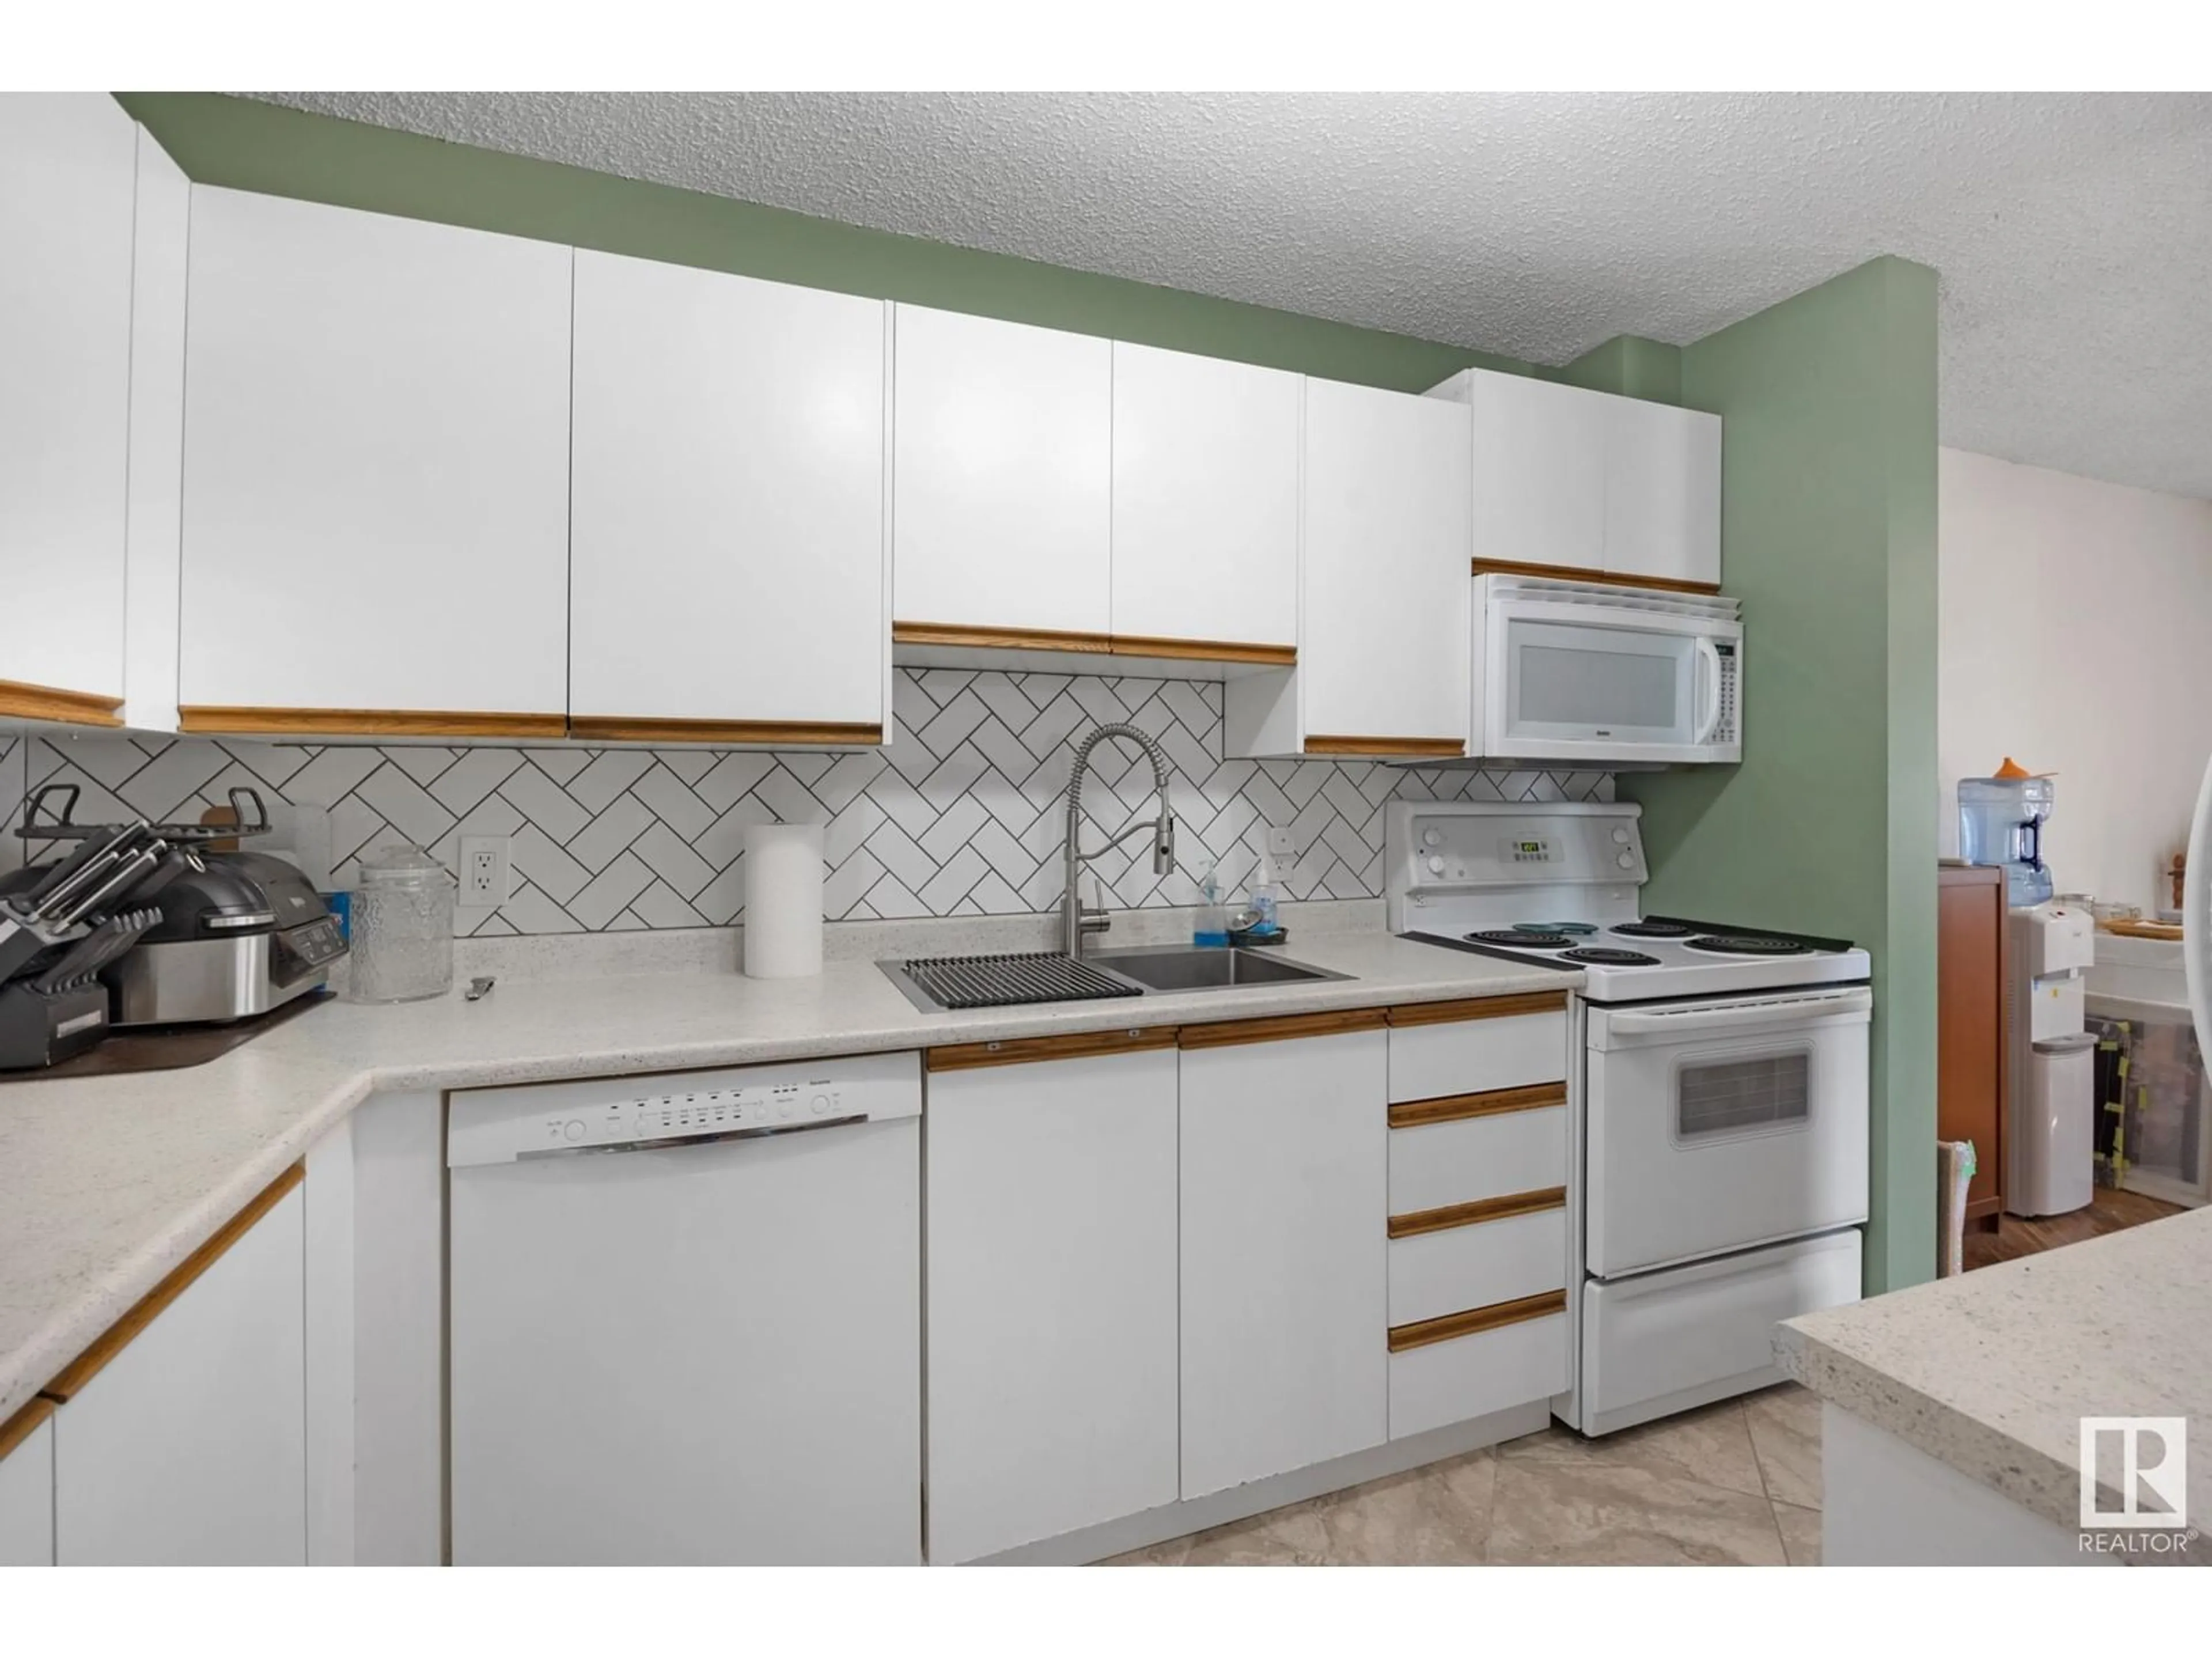 Standard kitchen for #101 6310 101 AV NW, Edmonton Alberta T6A0H5